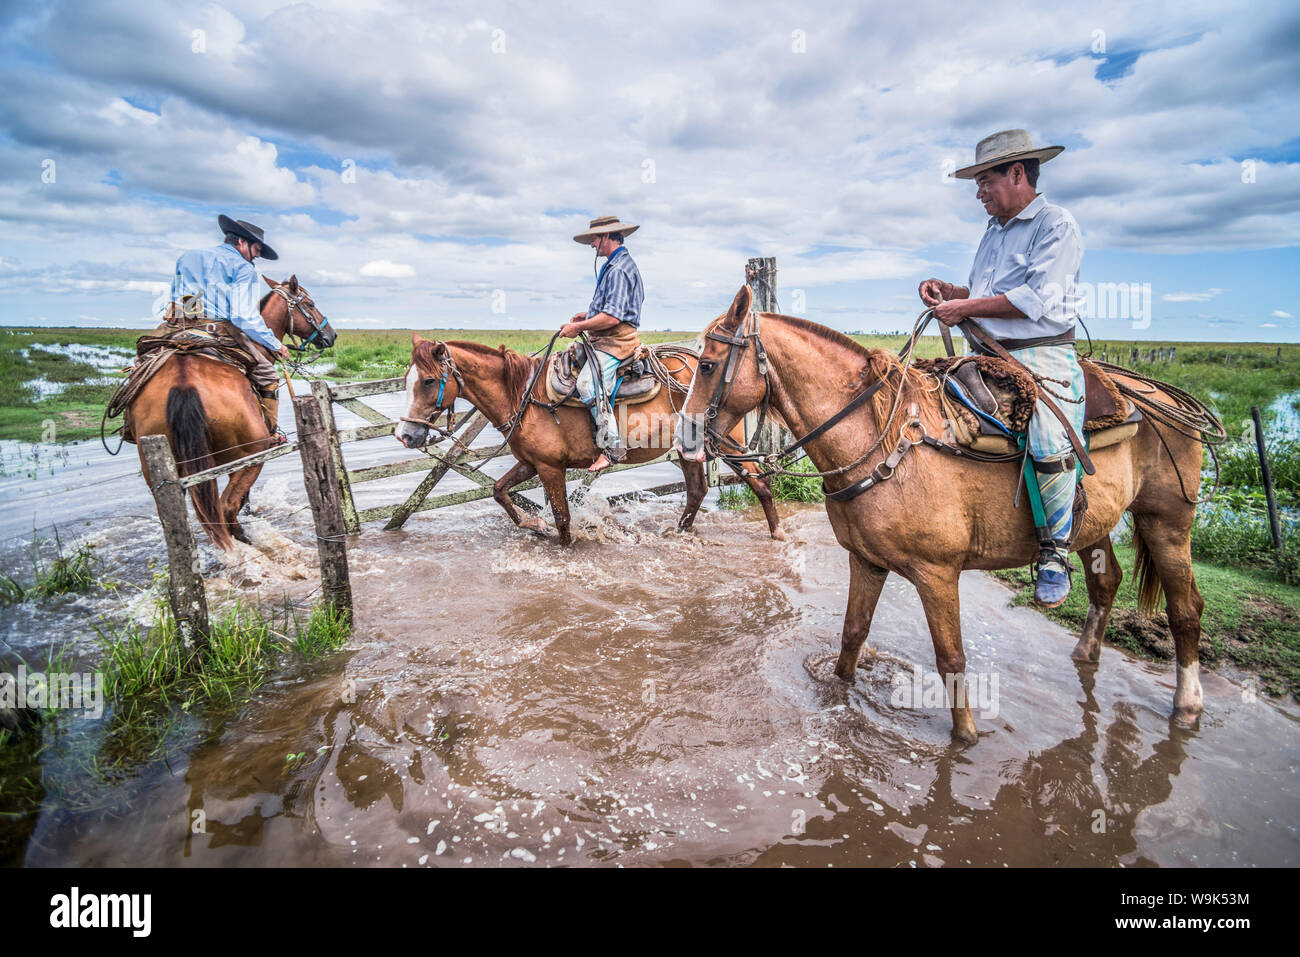 Gauchos argentins traditionnels sur une ferme de bétail, l'Estancia San Juan Poriahu, Ibera Wetlands, Province de Corrientes, Argentine, Amérique du Sud Banque D'Images